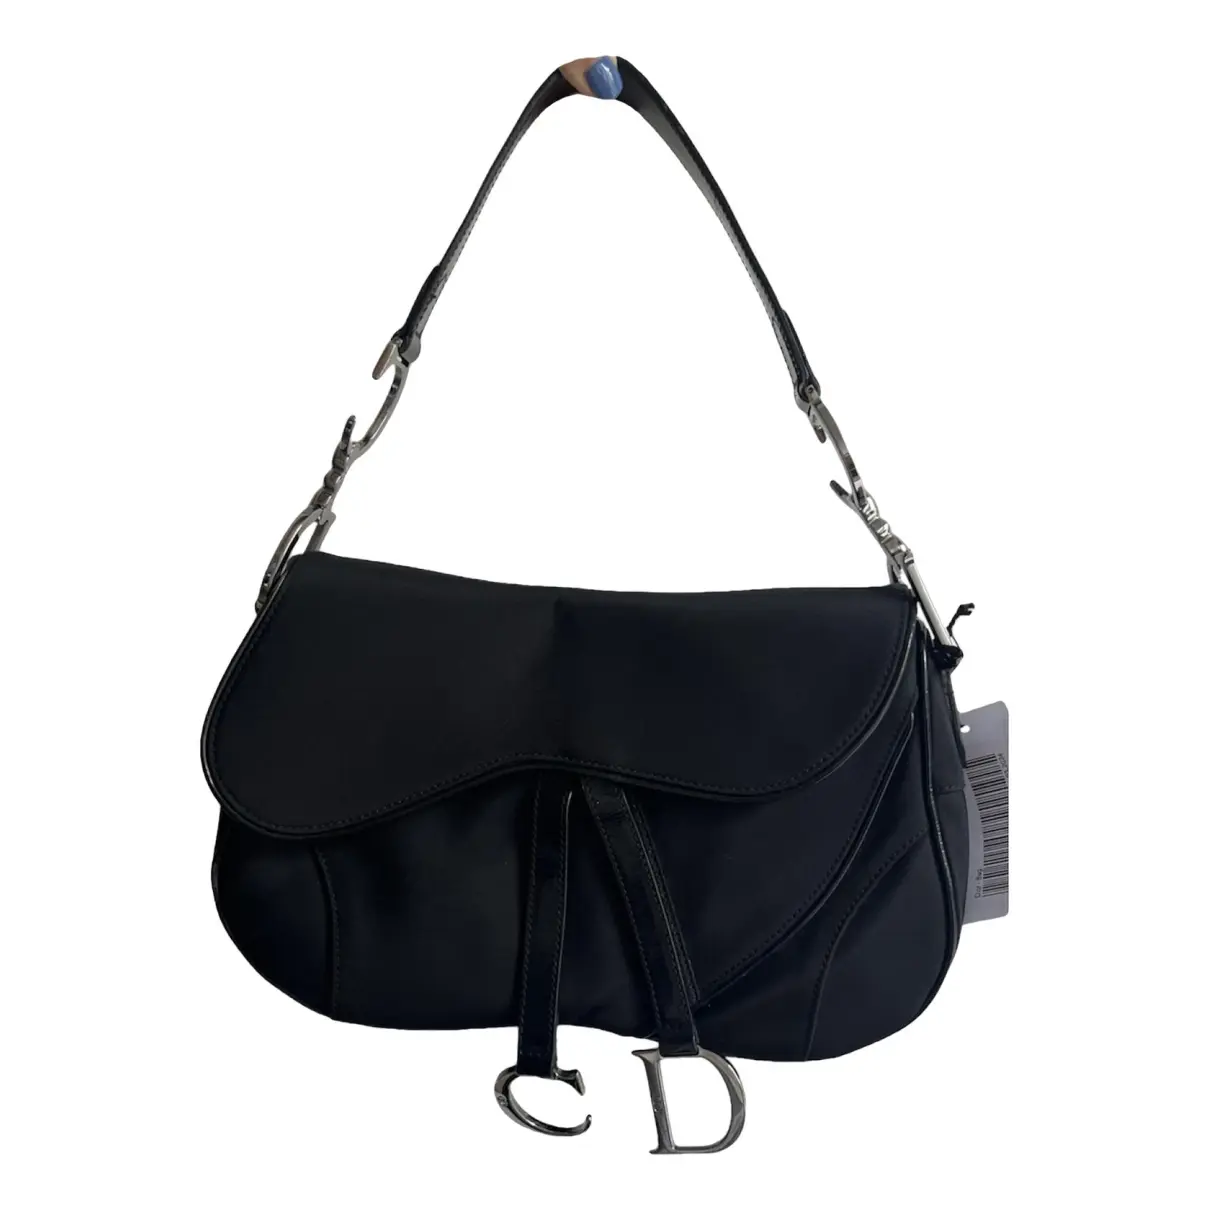 Double Saddle cloth handbag